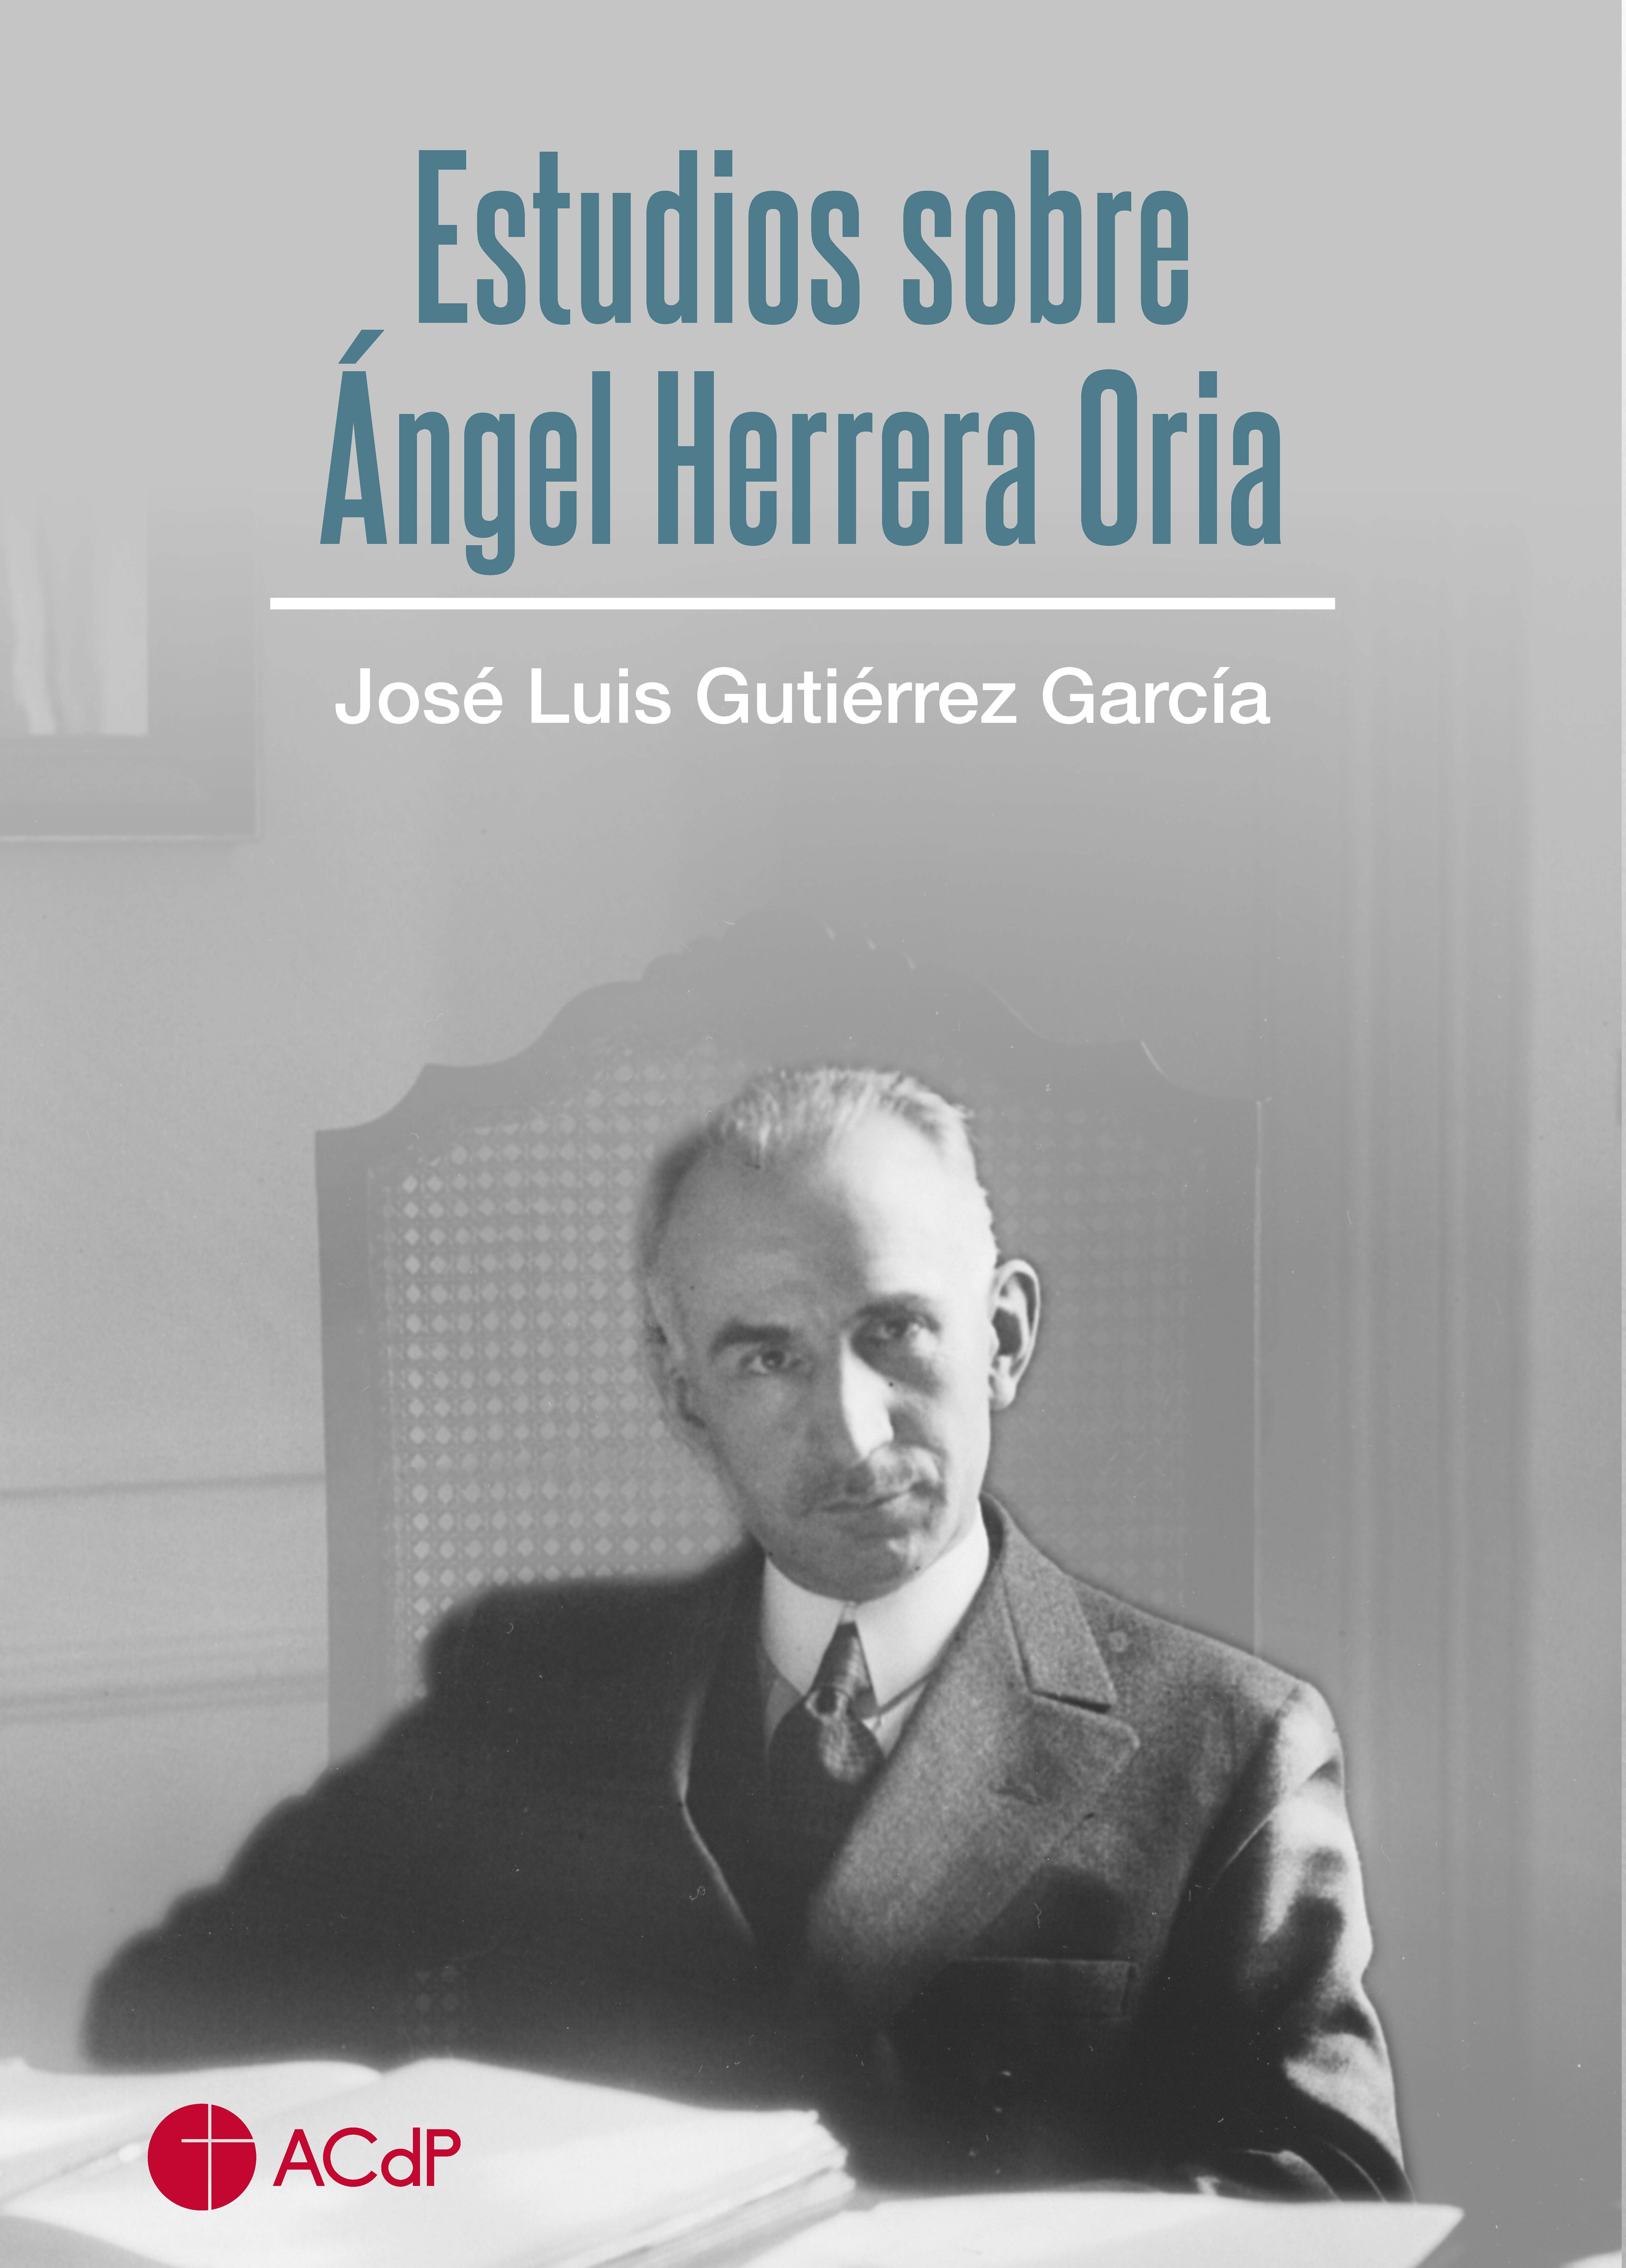 Estudios sobre Ángel Herrera Oria